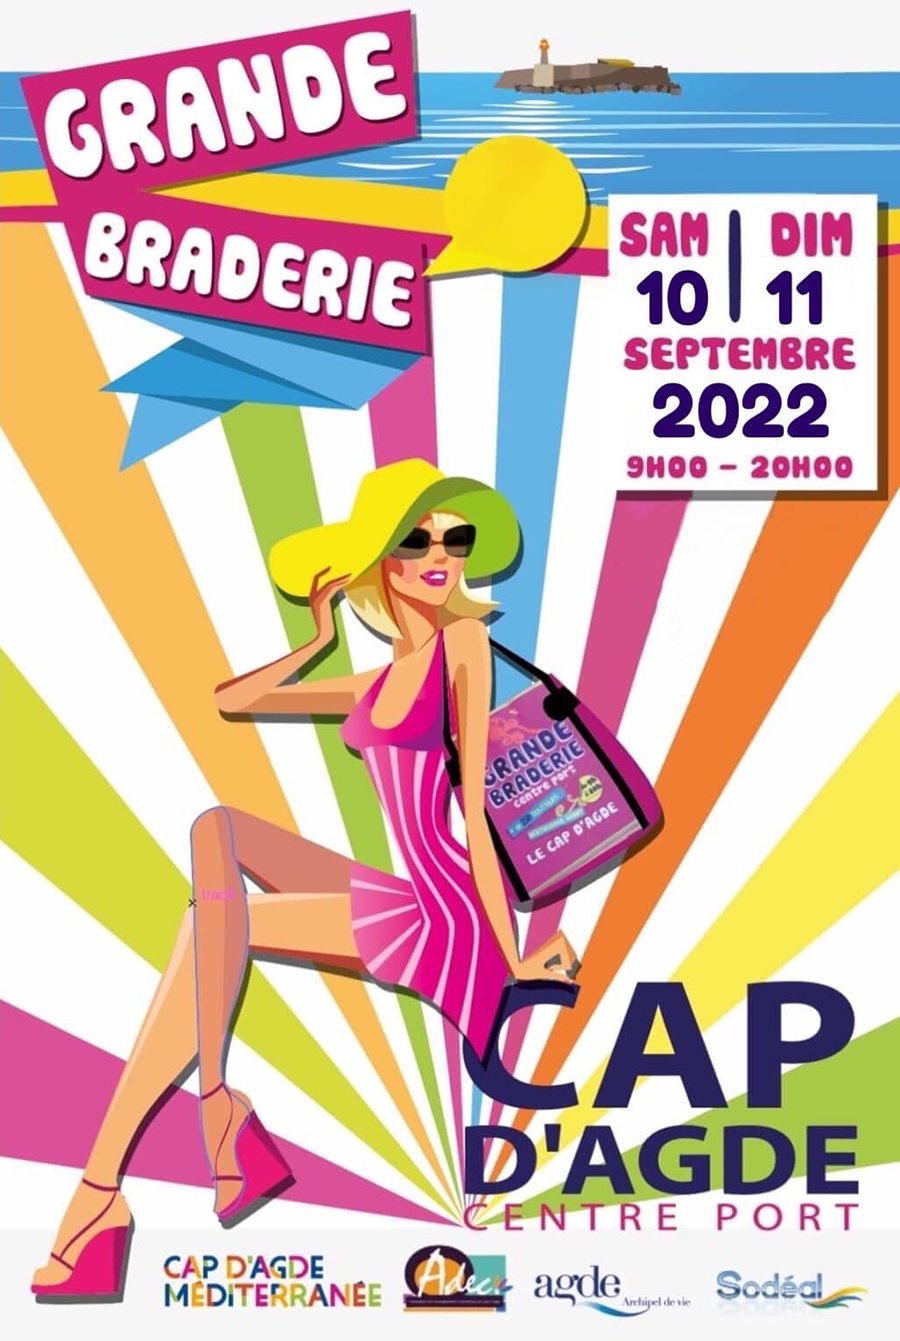 Cap d'Agde - La Grande Braderie  Samedi 10 et Dimanche 11 Septembre 2022  !  Demandez le programme !